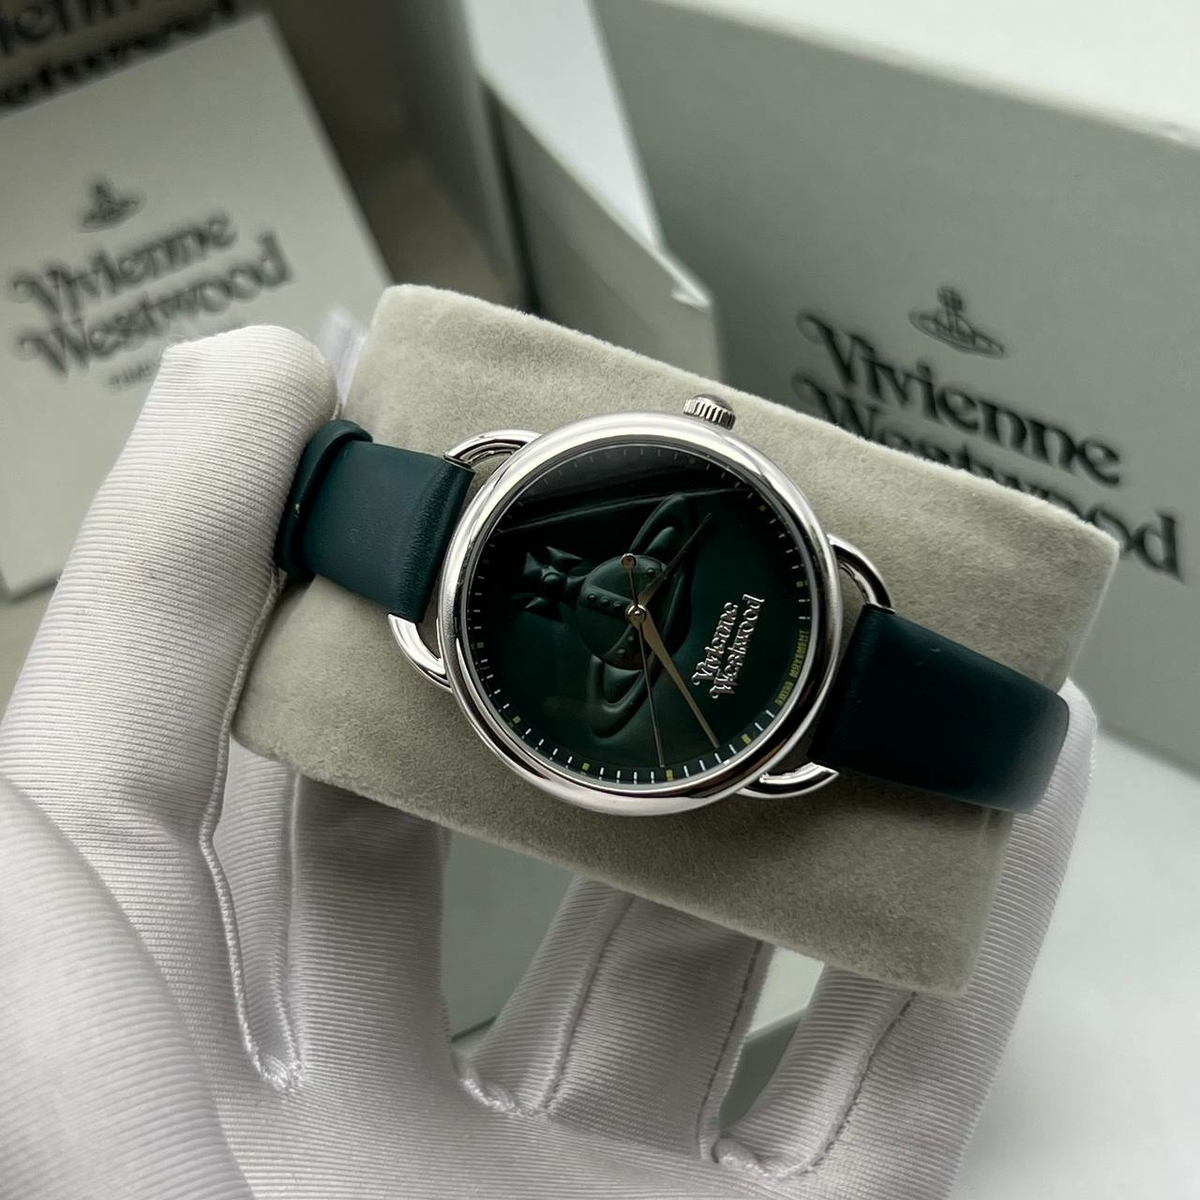 Vivienne Westwood часы #2 в «Globestyle» арт.153235SK